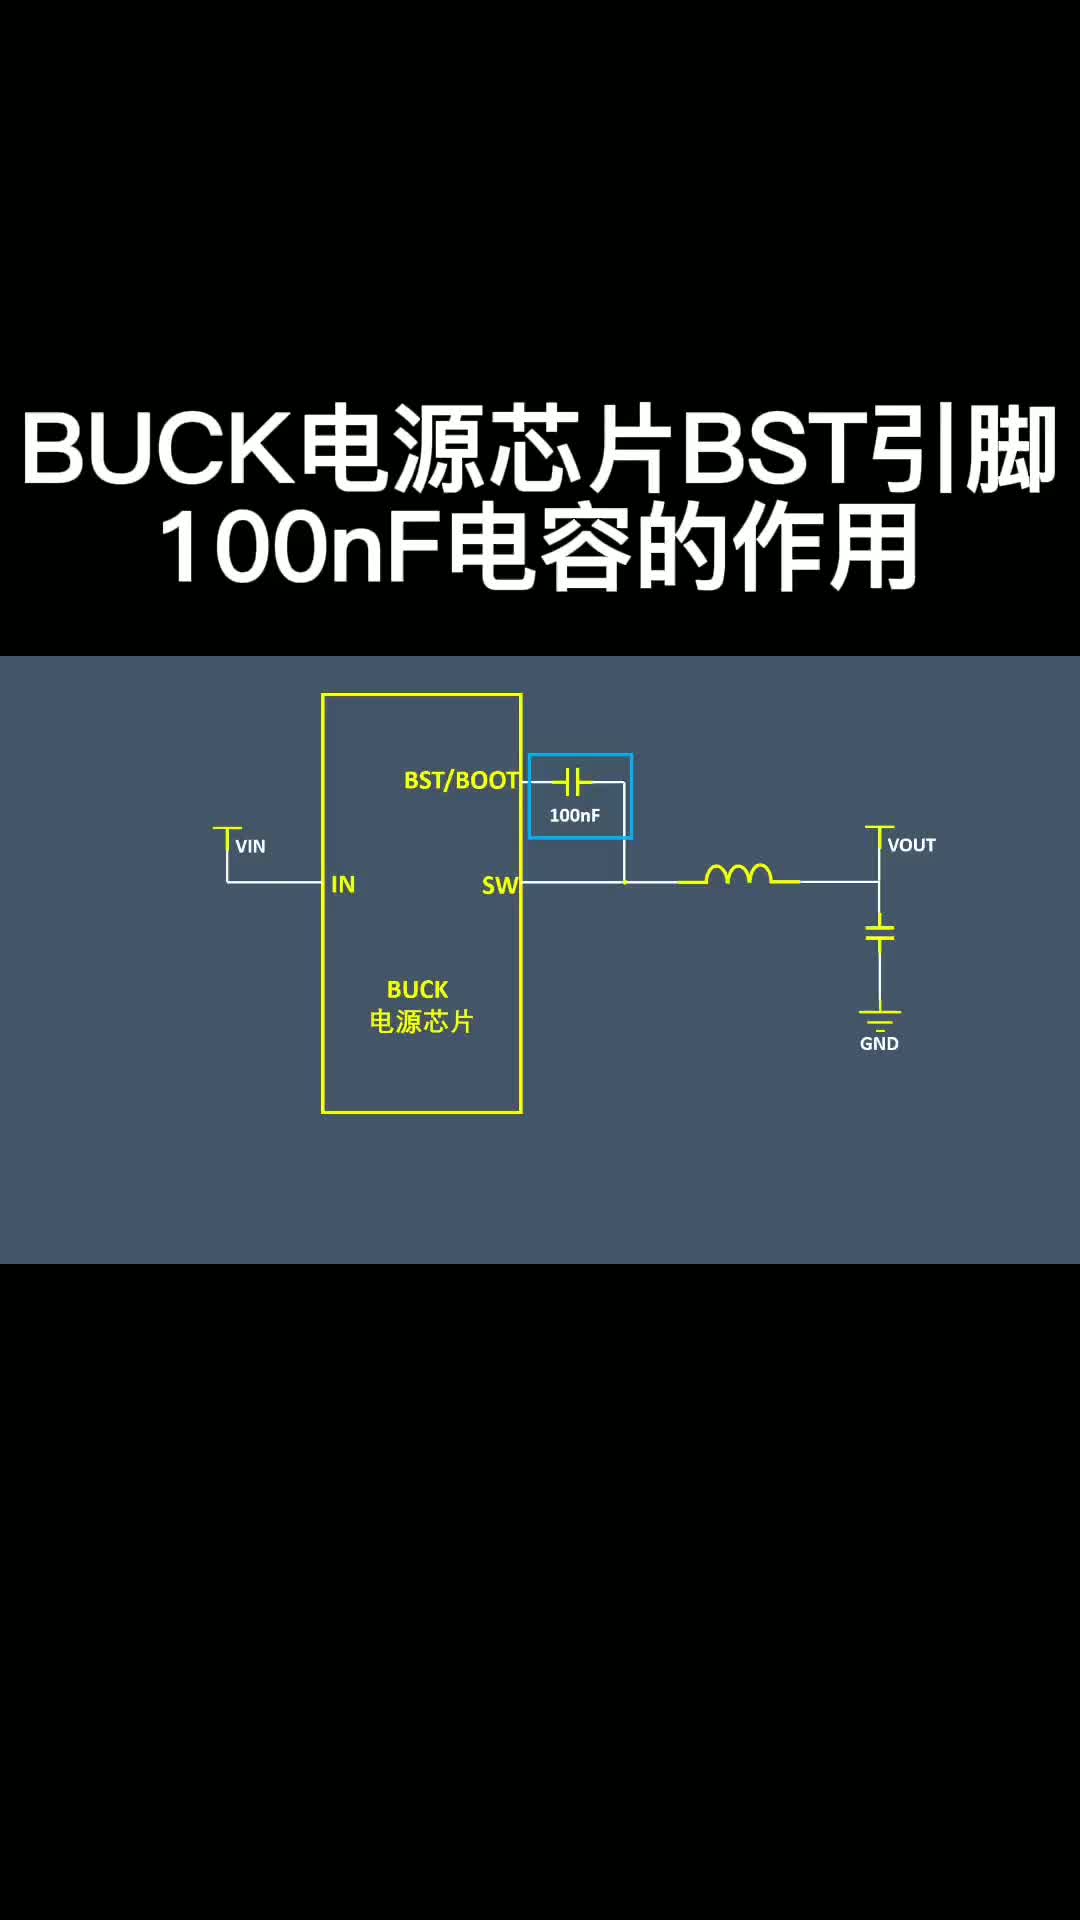 BUCK電源芯片BST引腳100nF電容的作用 #電路設計 